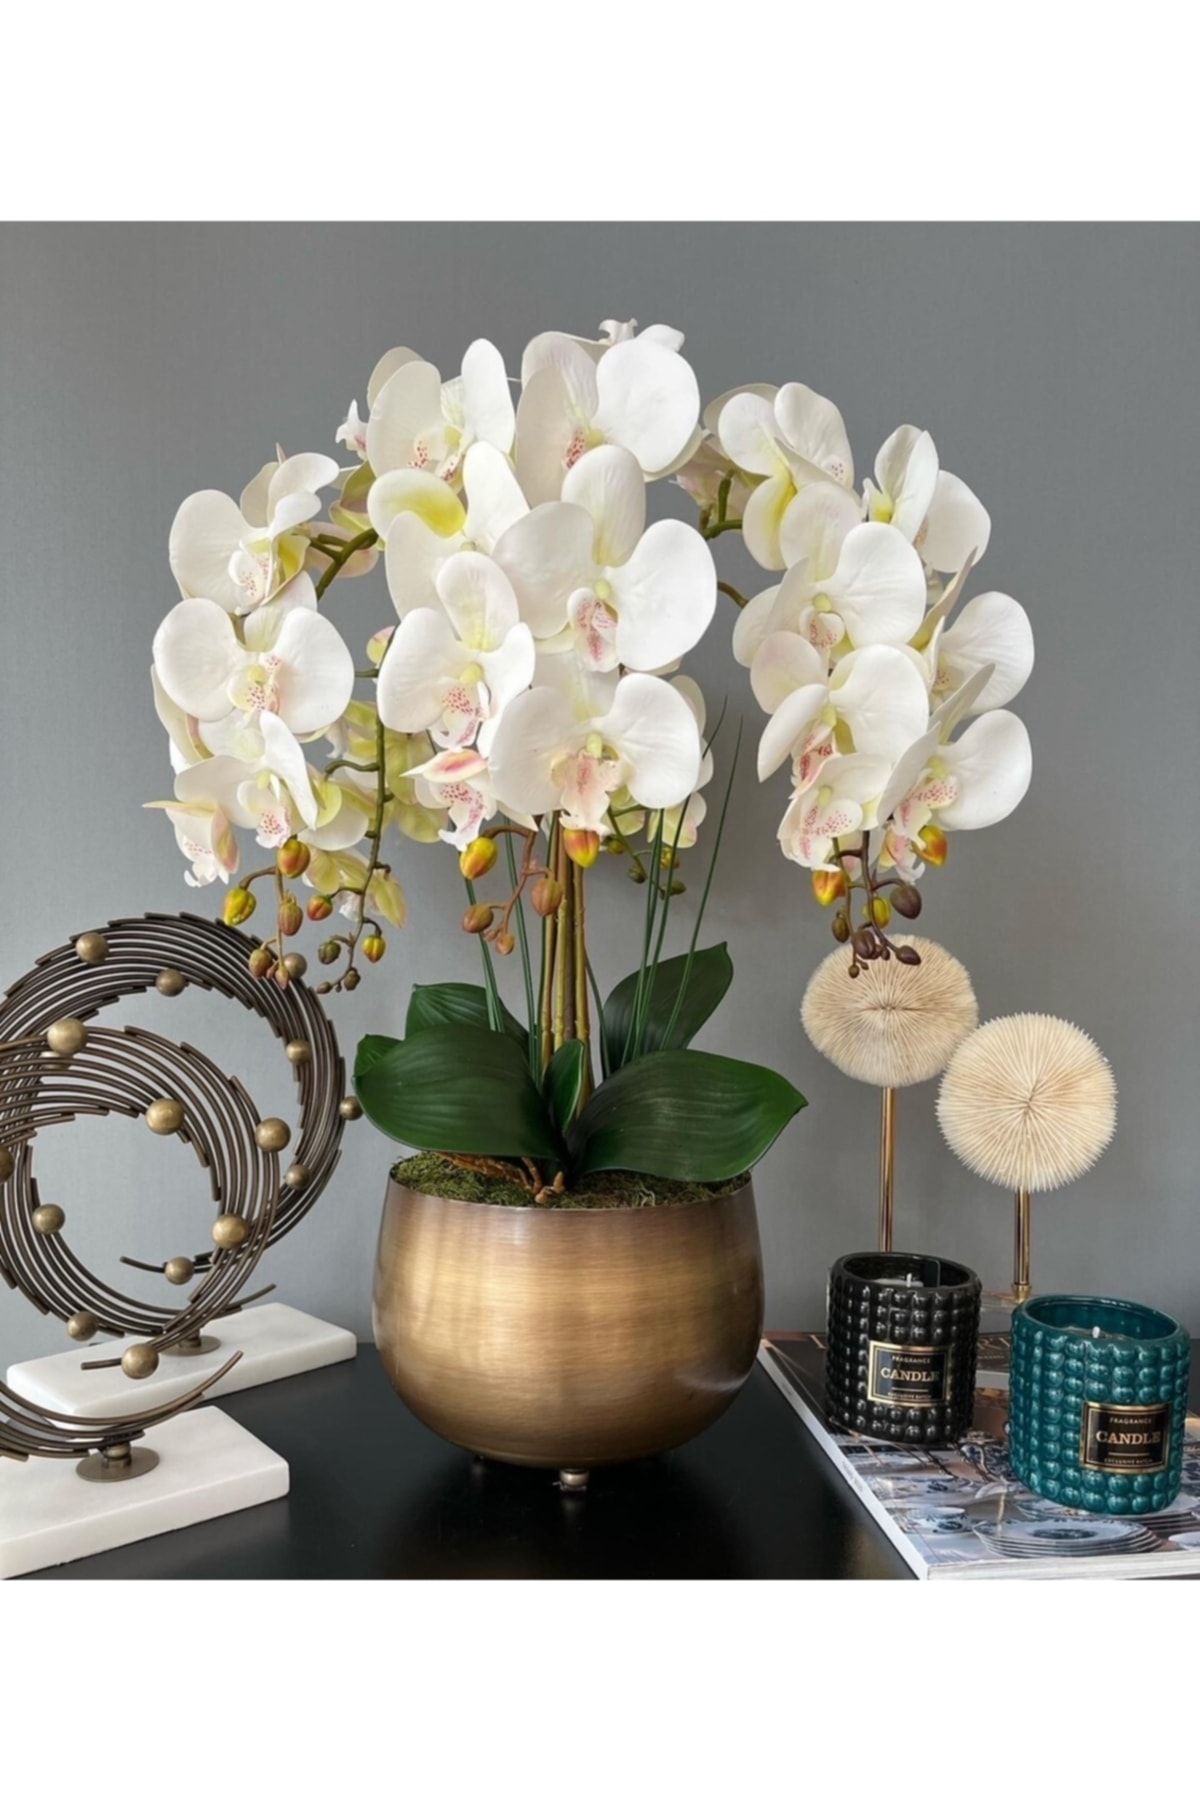 LİLOTEHOME Yapay Islak Orkide Aranjman 5 Dal Beyaz Eskitme Japon Model Saksı